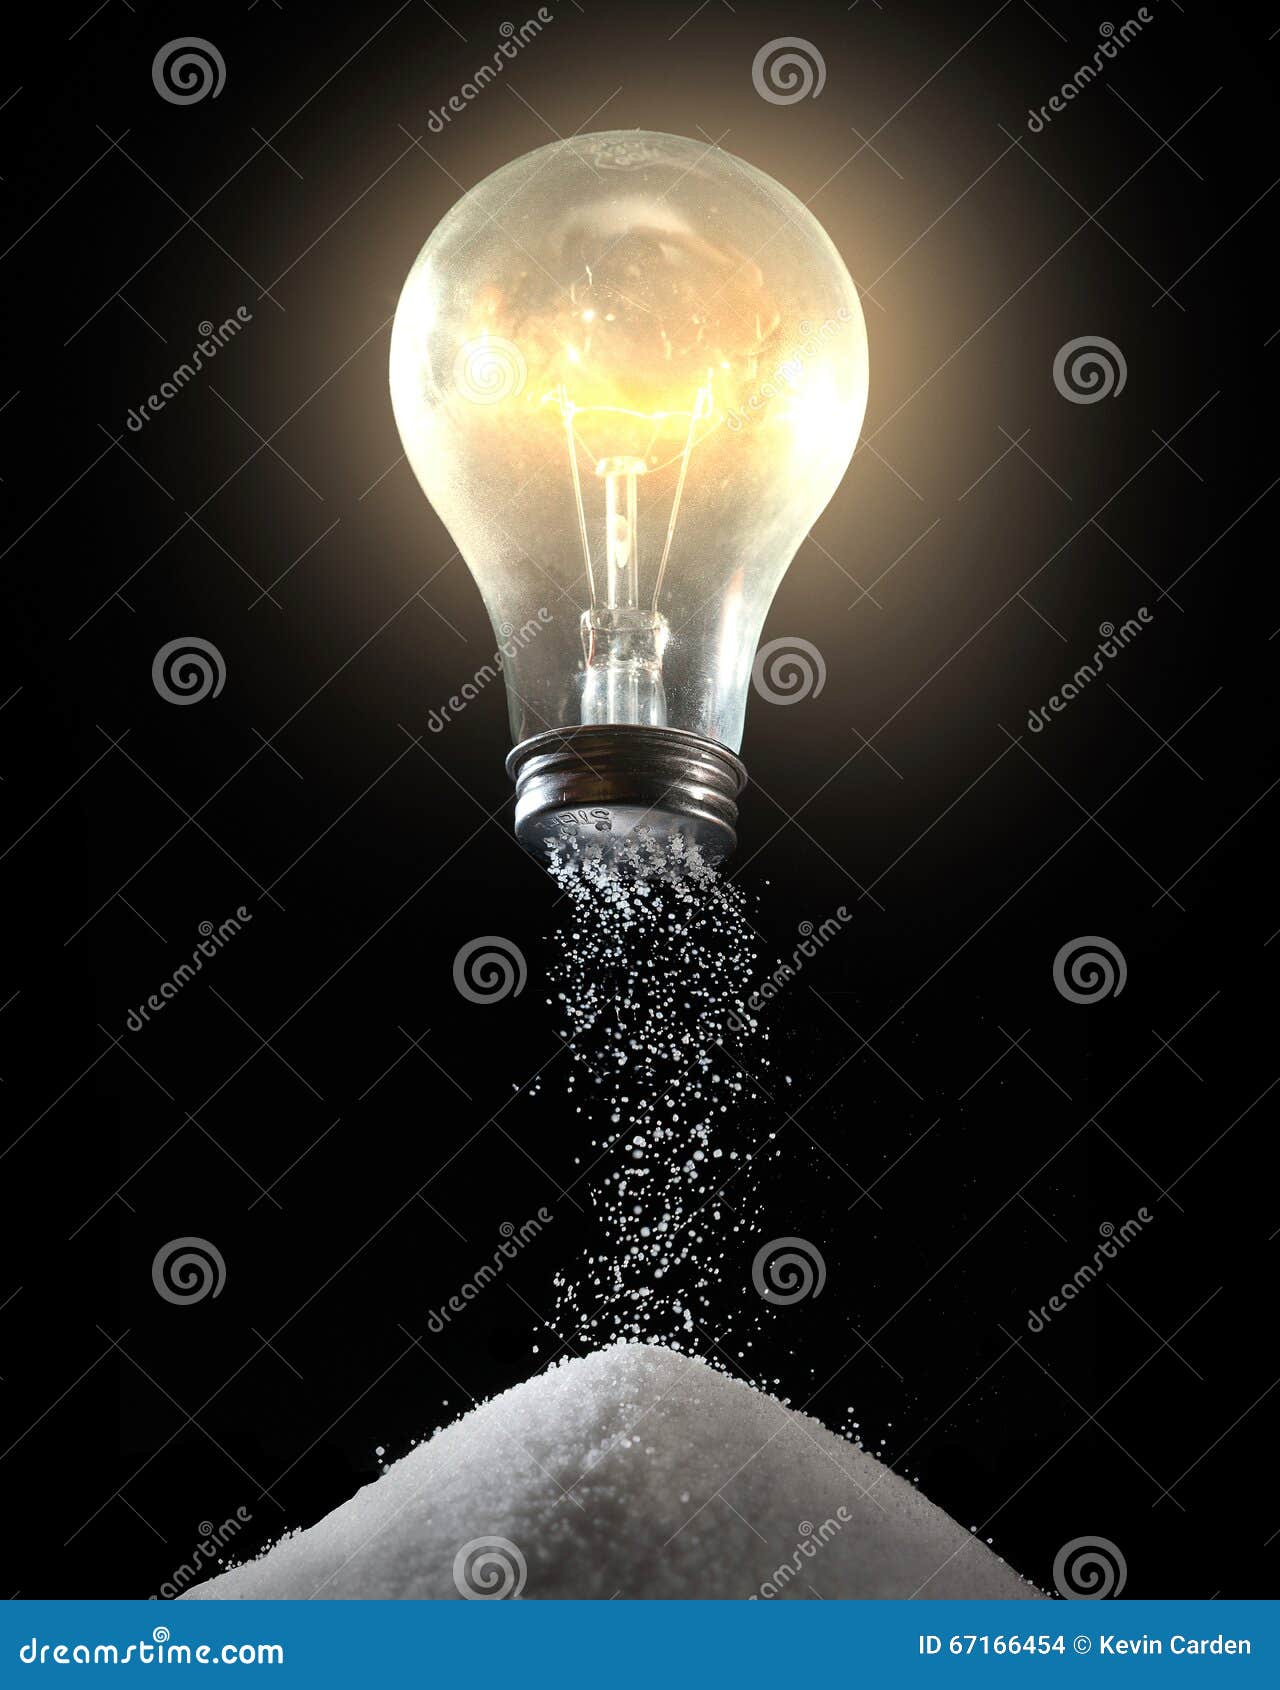 light bulb and salt shaker